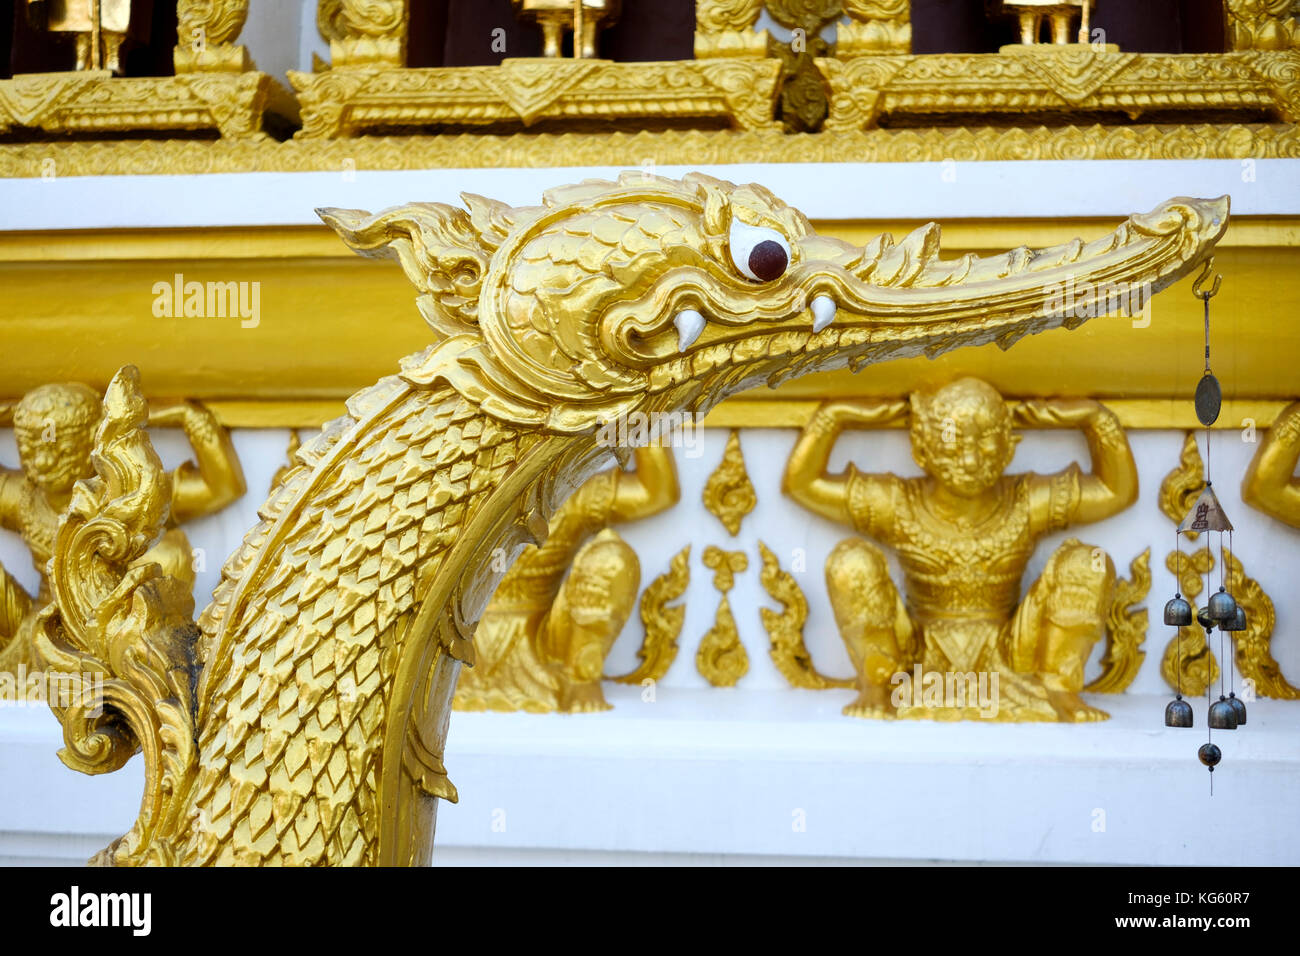 Détail de l'animal d'or à statue entrée est de chedi ou stupa (pagode), wat nong bua temple, Ubon Ratchatani, l'Isaan, Thaïlande. Banque D'Images